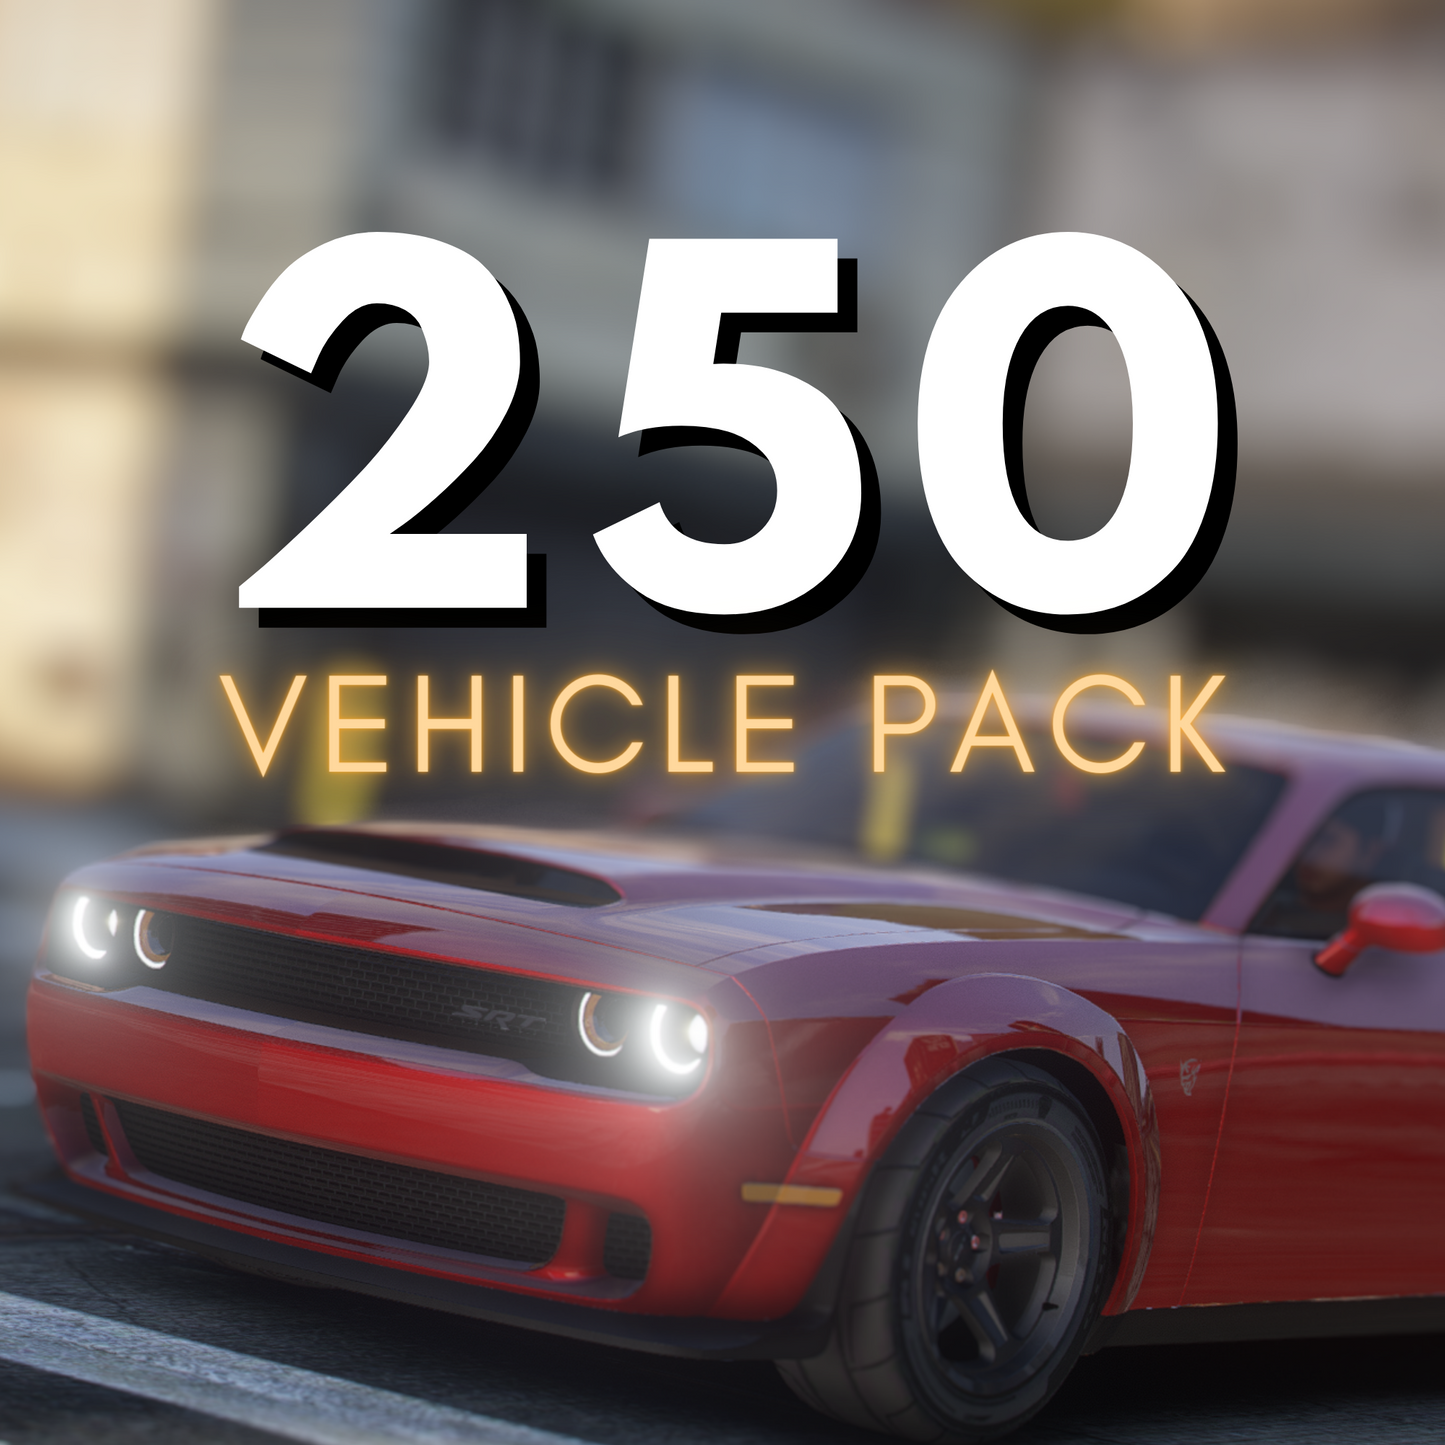 Pack de 250 voitures | Optimisé !